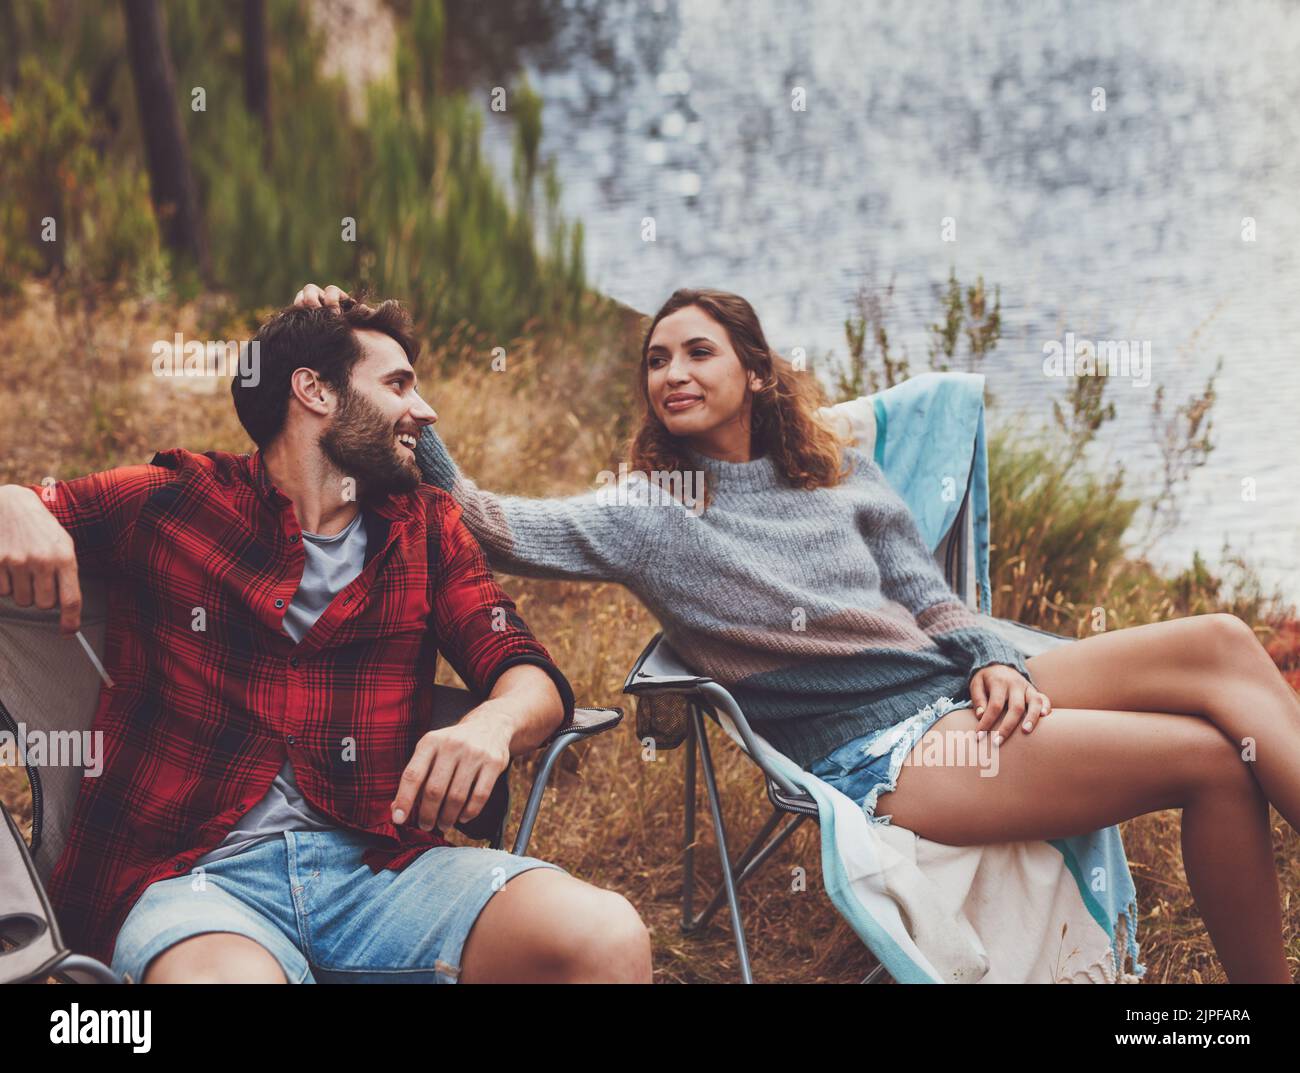 Anhängliches junges Paar, das auf ihrem Campingplatz sitzt. Romantisches junges Paar, das eine gute Zeit auf einem Campingurlaub hat. Stockfoto